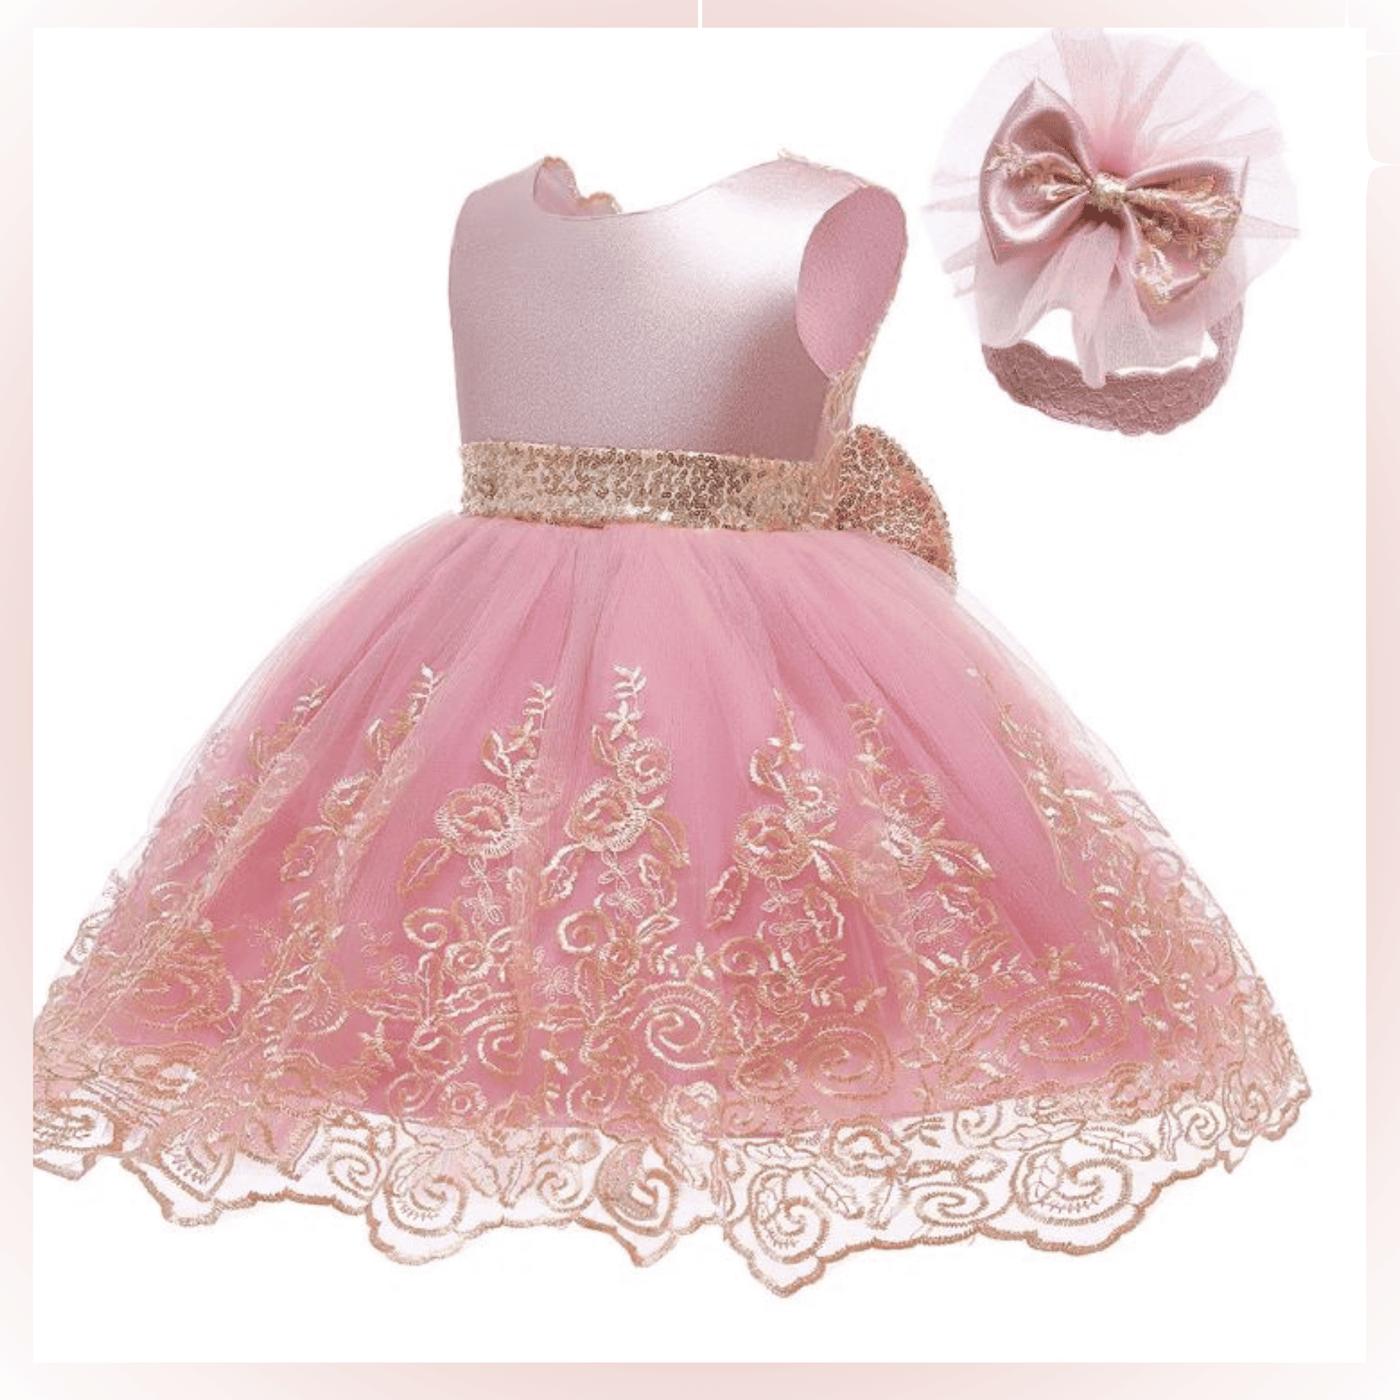 Maya Baby Dress - Rose Pink/Gold